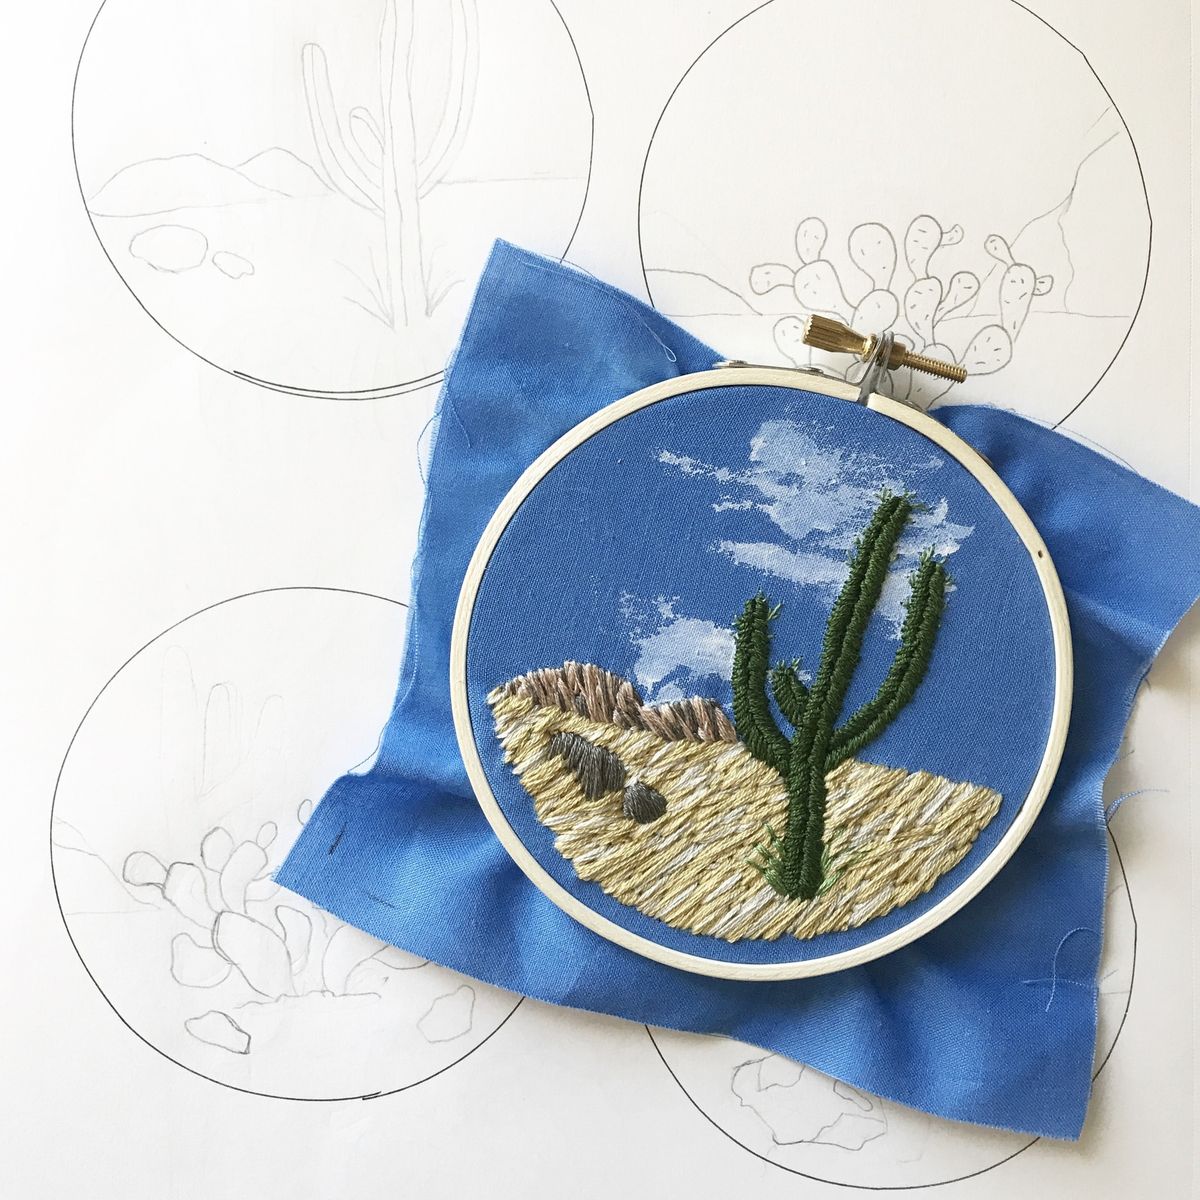 Stitching the Desert with Erin Frisch